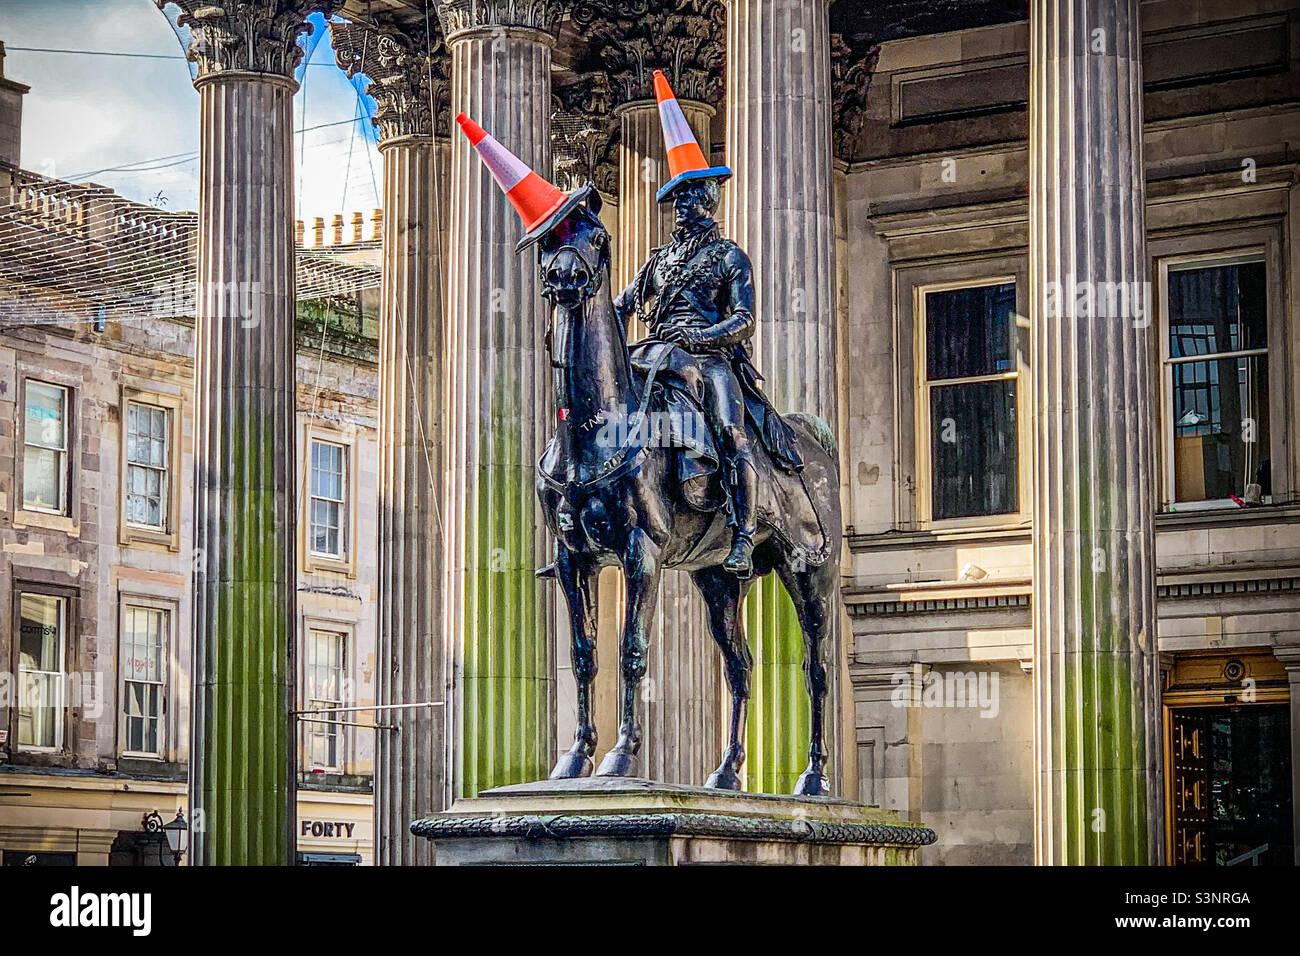 Estatua ecuestre de Arthur Wellesley, duque de Wellington de 1st con un cono de tráfico en su cabeza, fuera de la Galería de Arte Moderno en Glasgow, Escocia Foto de stock